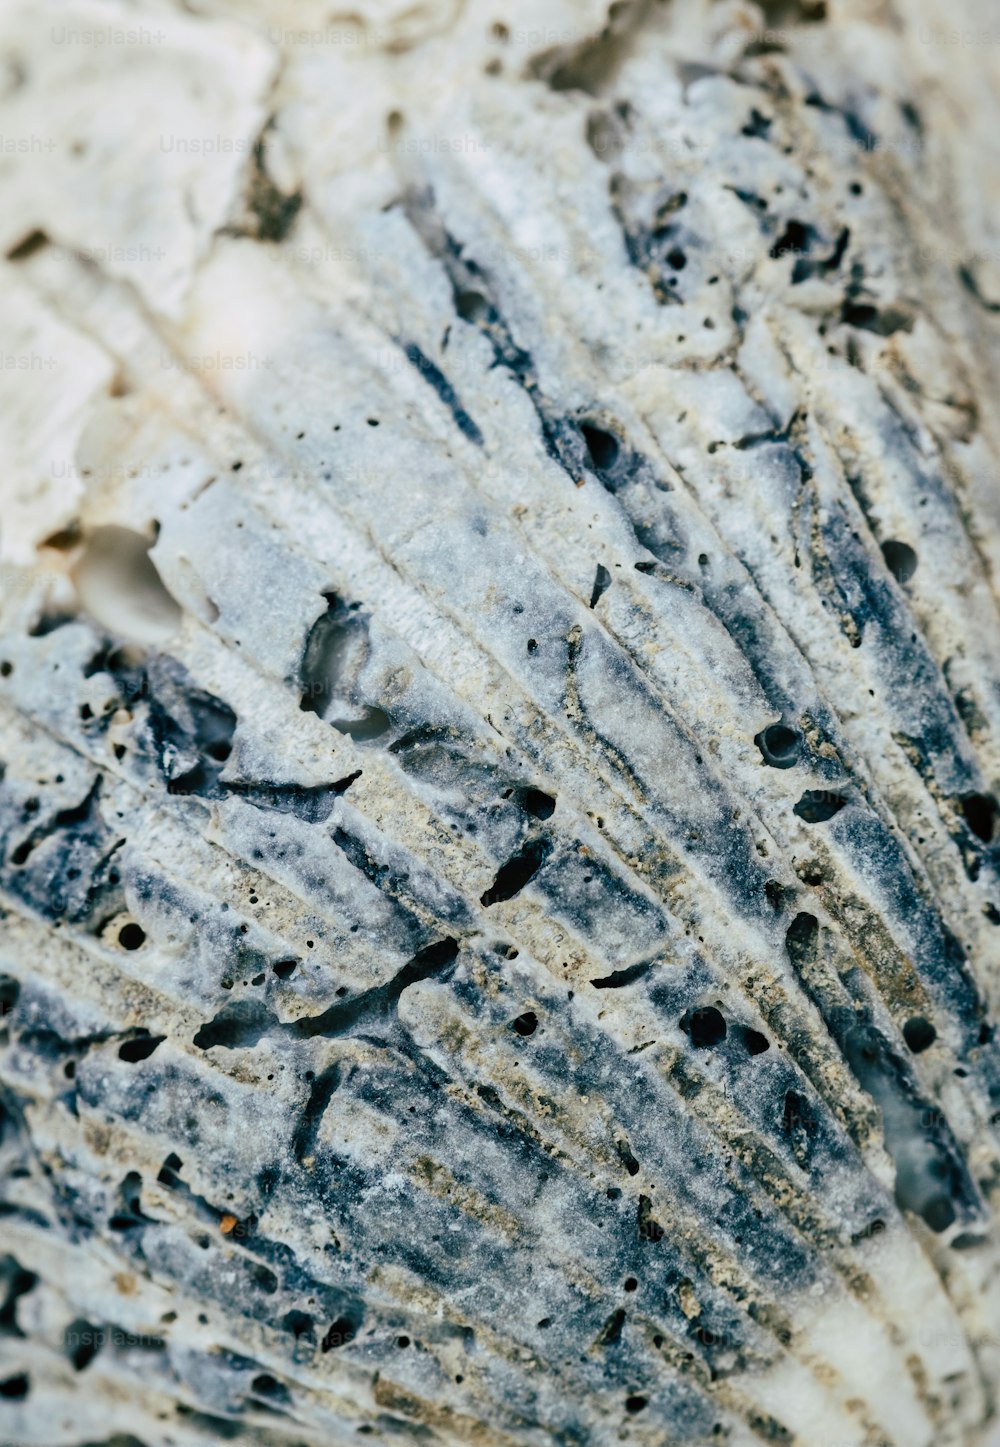 um close up de um pedaço de rocha com buracos nele